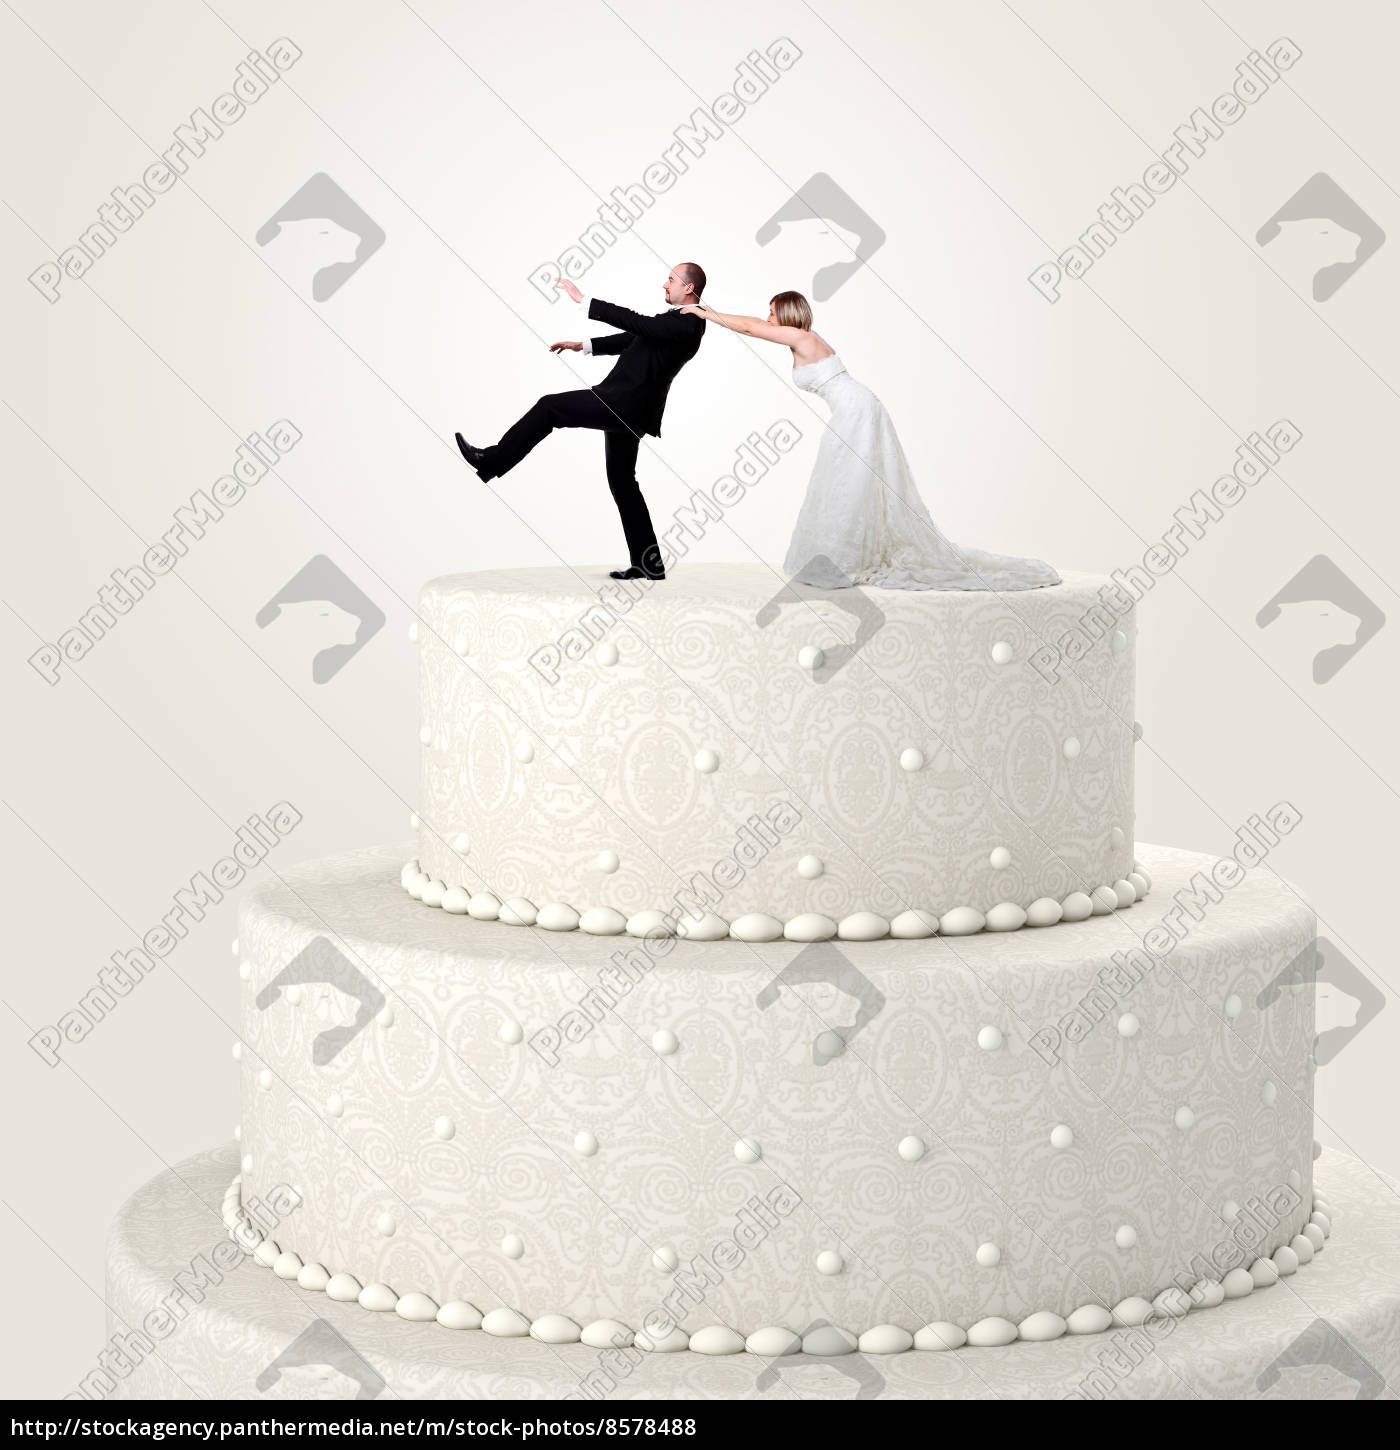 Bolo De Casamento - Jogo Sobre Foto de Stock - Imagem de adulto, machos:  104132526